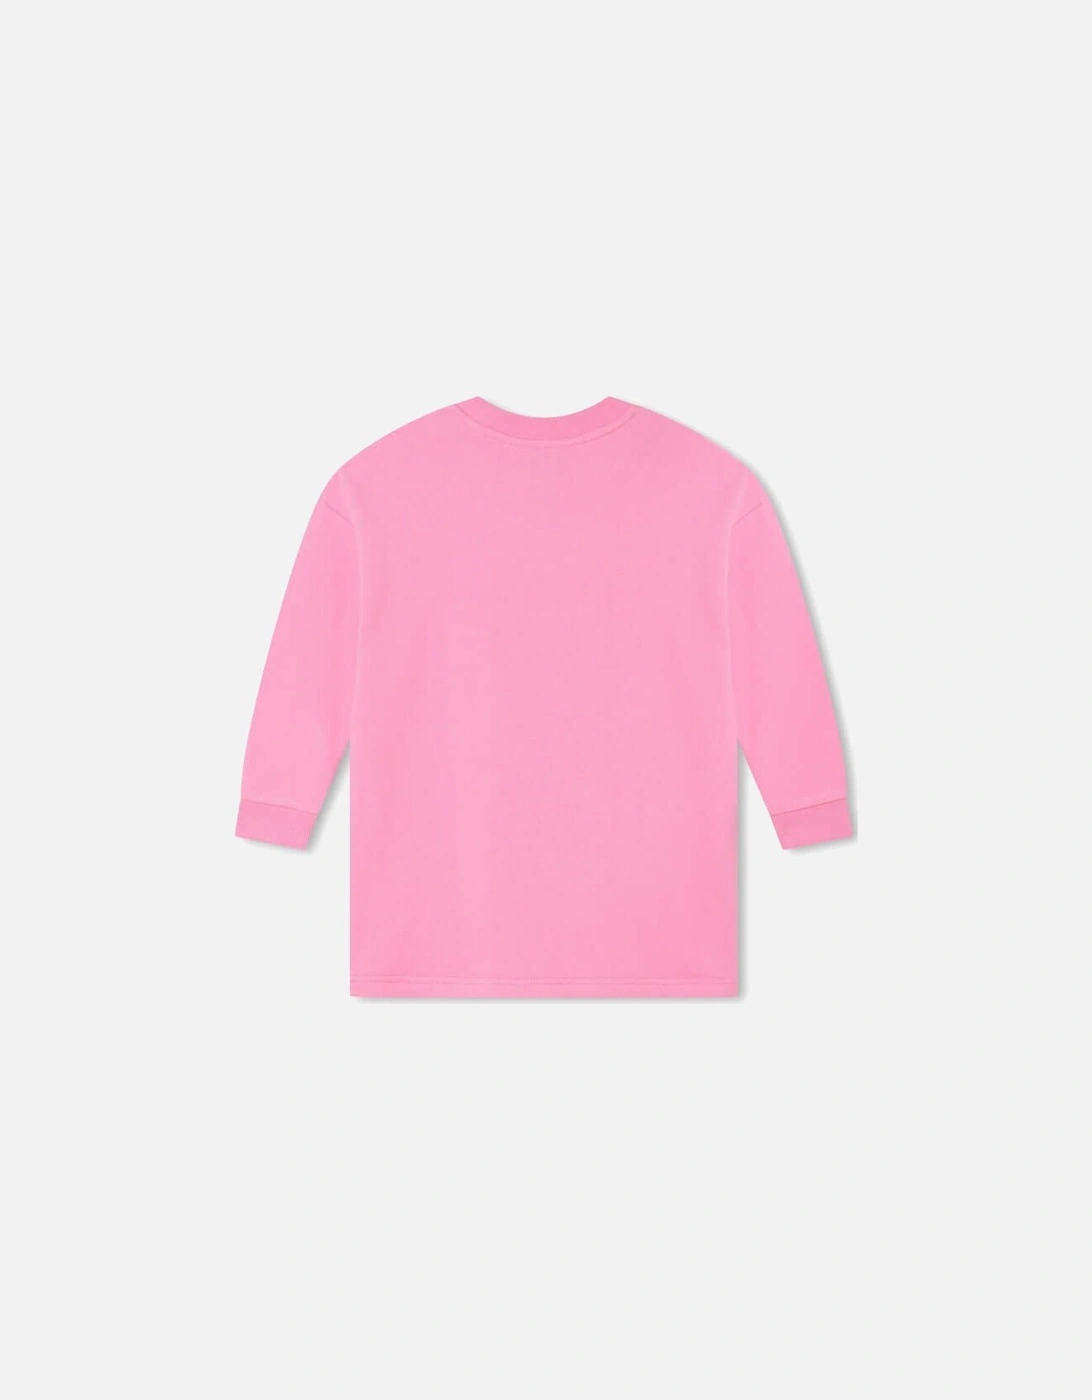 Girls Pink Tote Bag Sweatshirt Dress